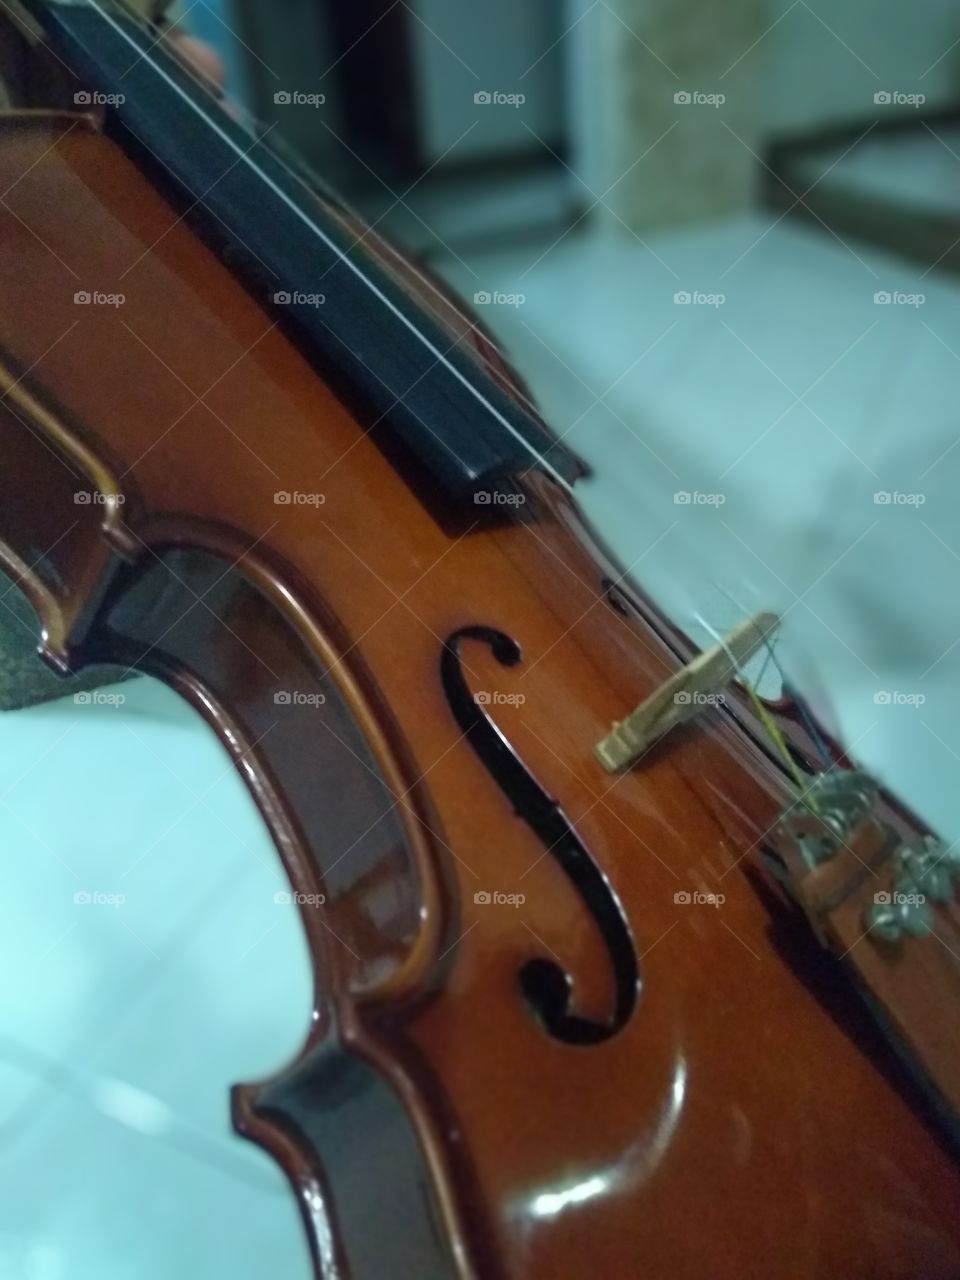 Live violin